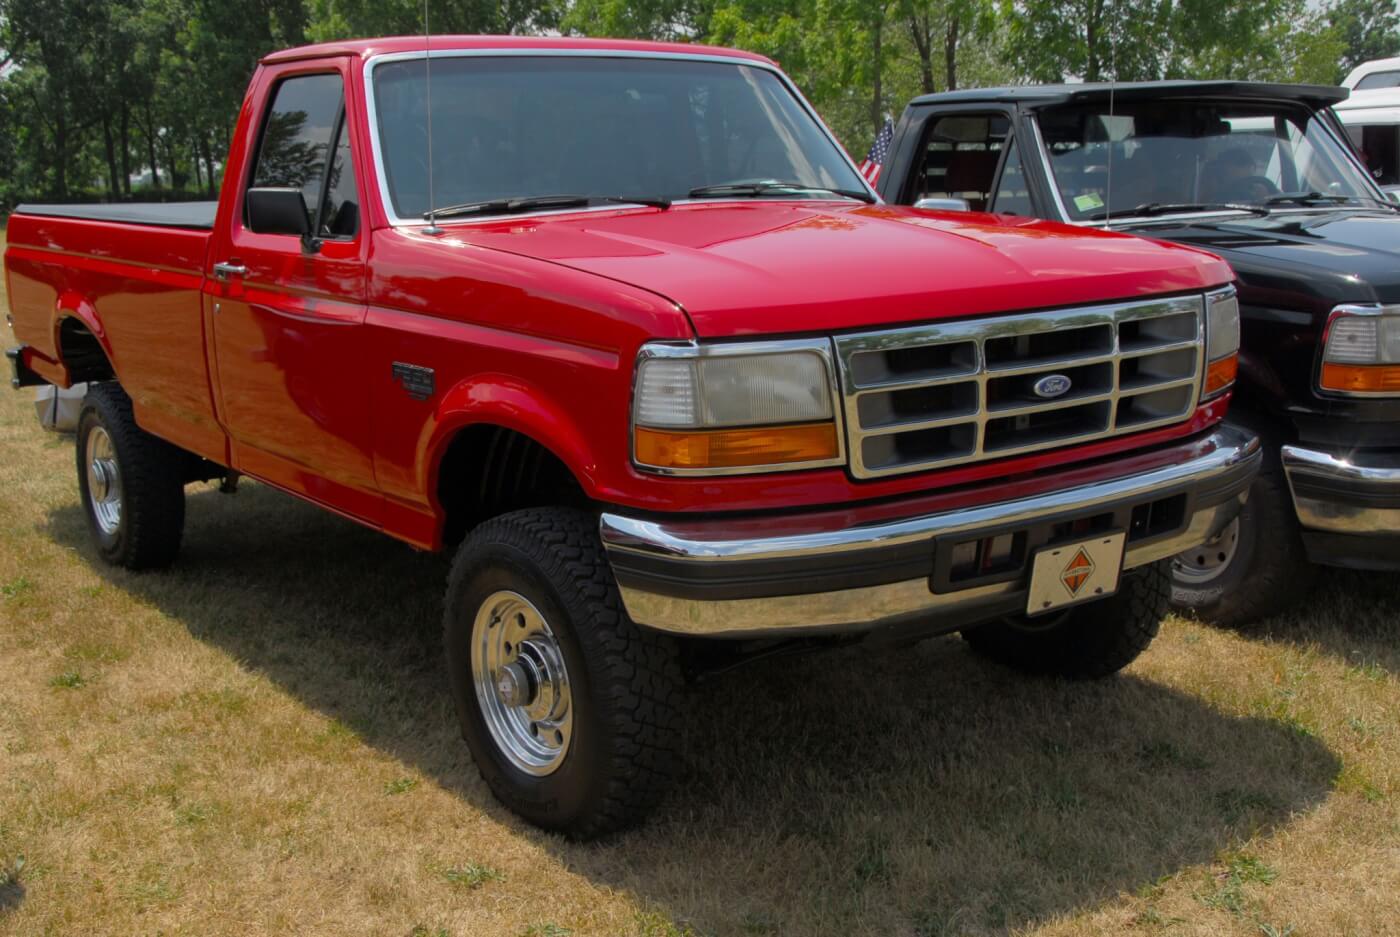 La linea aggiornata dei camion Ford del 1992 fu quella in cui l'IDI avrebbe fatto il suo arco finale e il Power Stroke avrebbe preso il sopravvento. L'unica cosa che contrassegnava un diesel aspirato in quest'epoca era un distintivo sul portellone. Nel caso di questo camion turbo diesel del 1993, c'è un ulteriore 